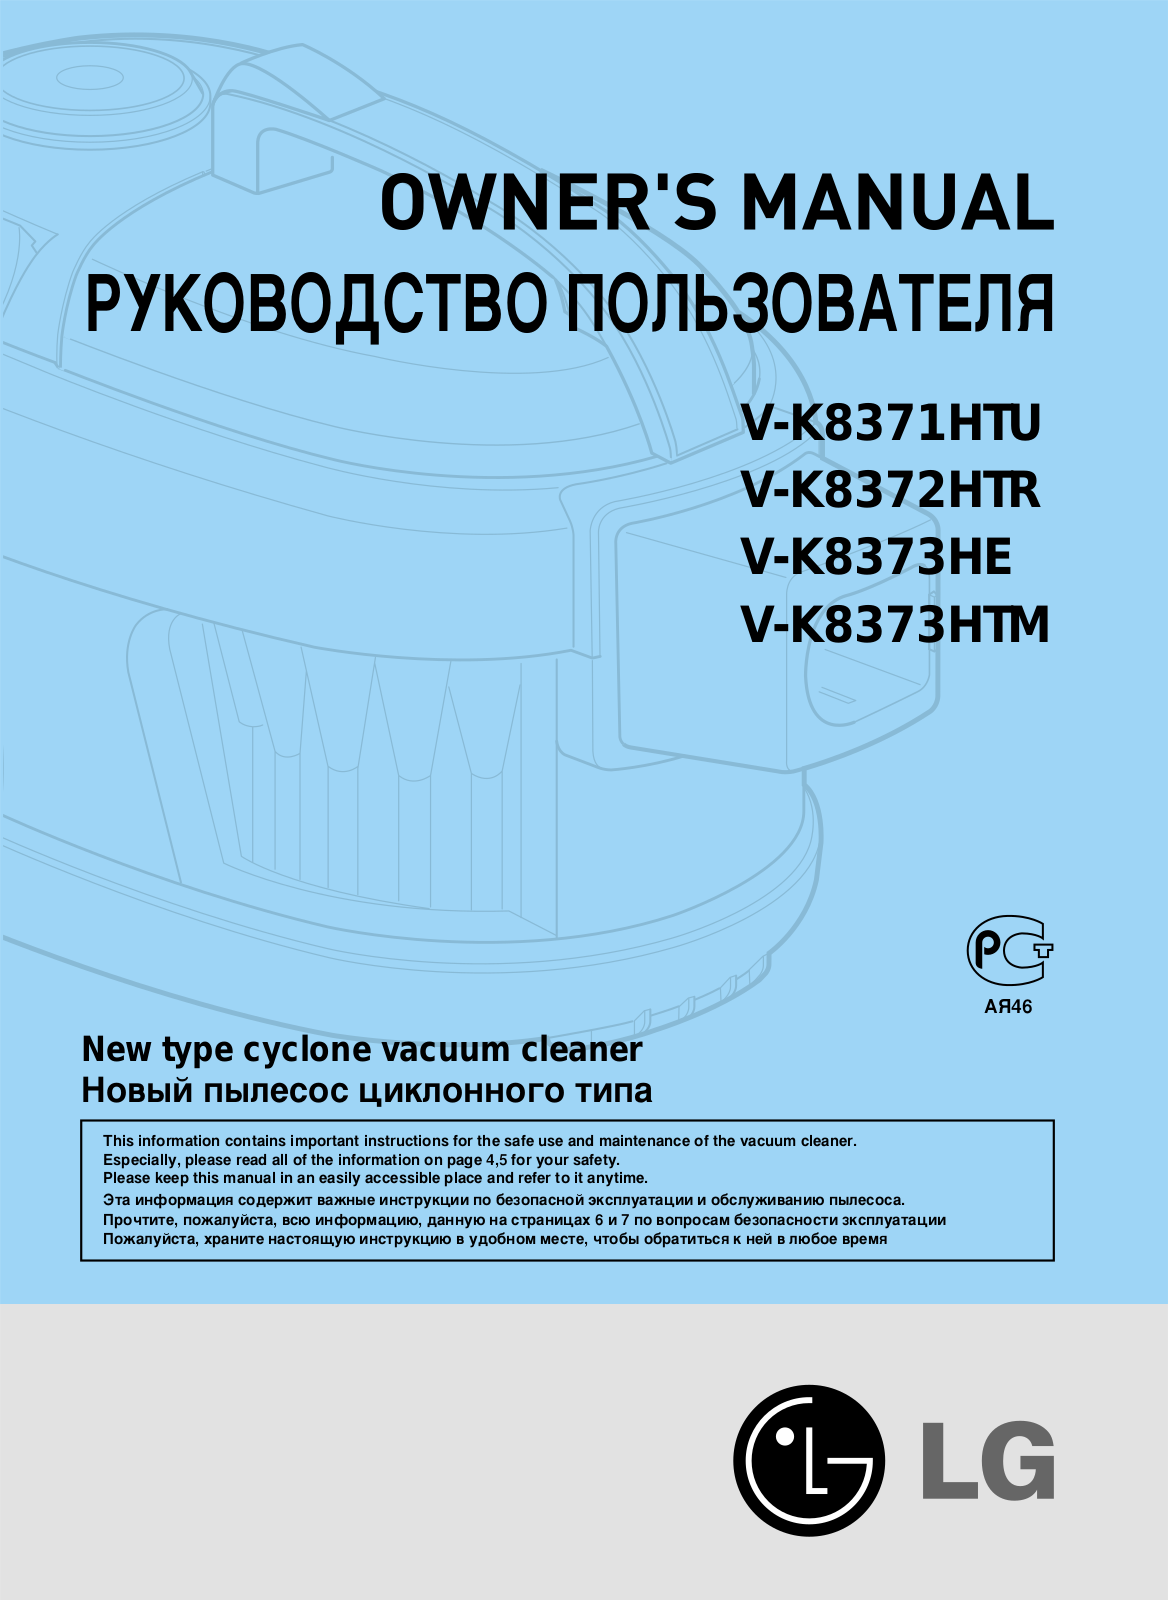 LG V-K8372HTR User Manual